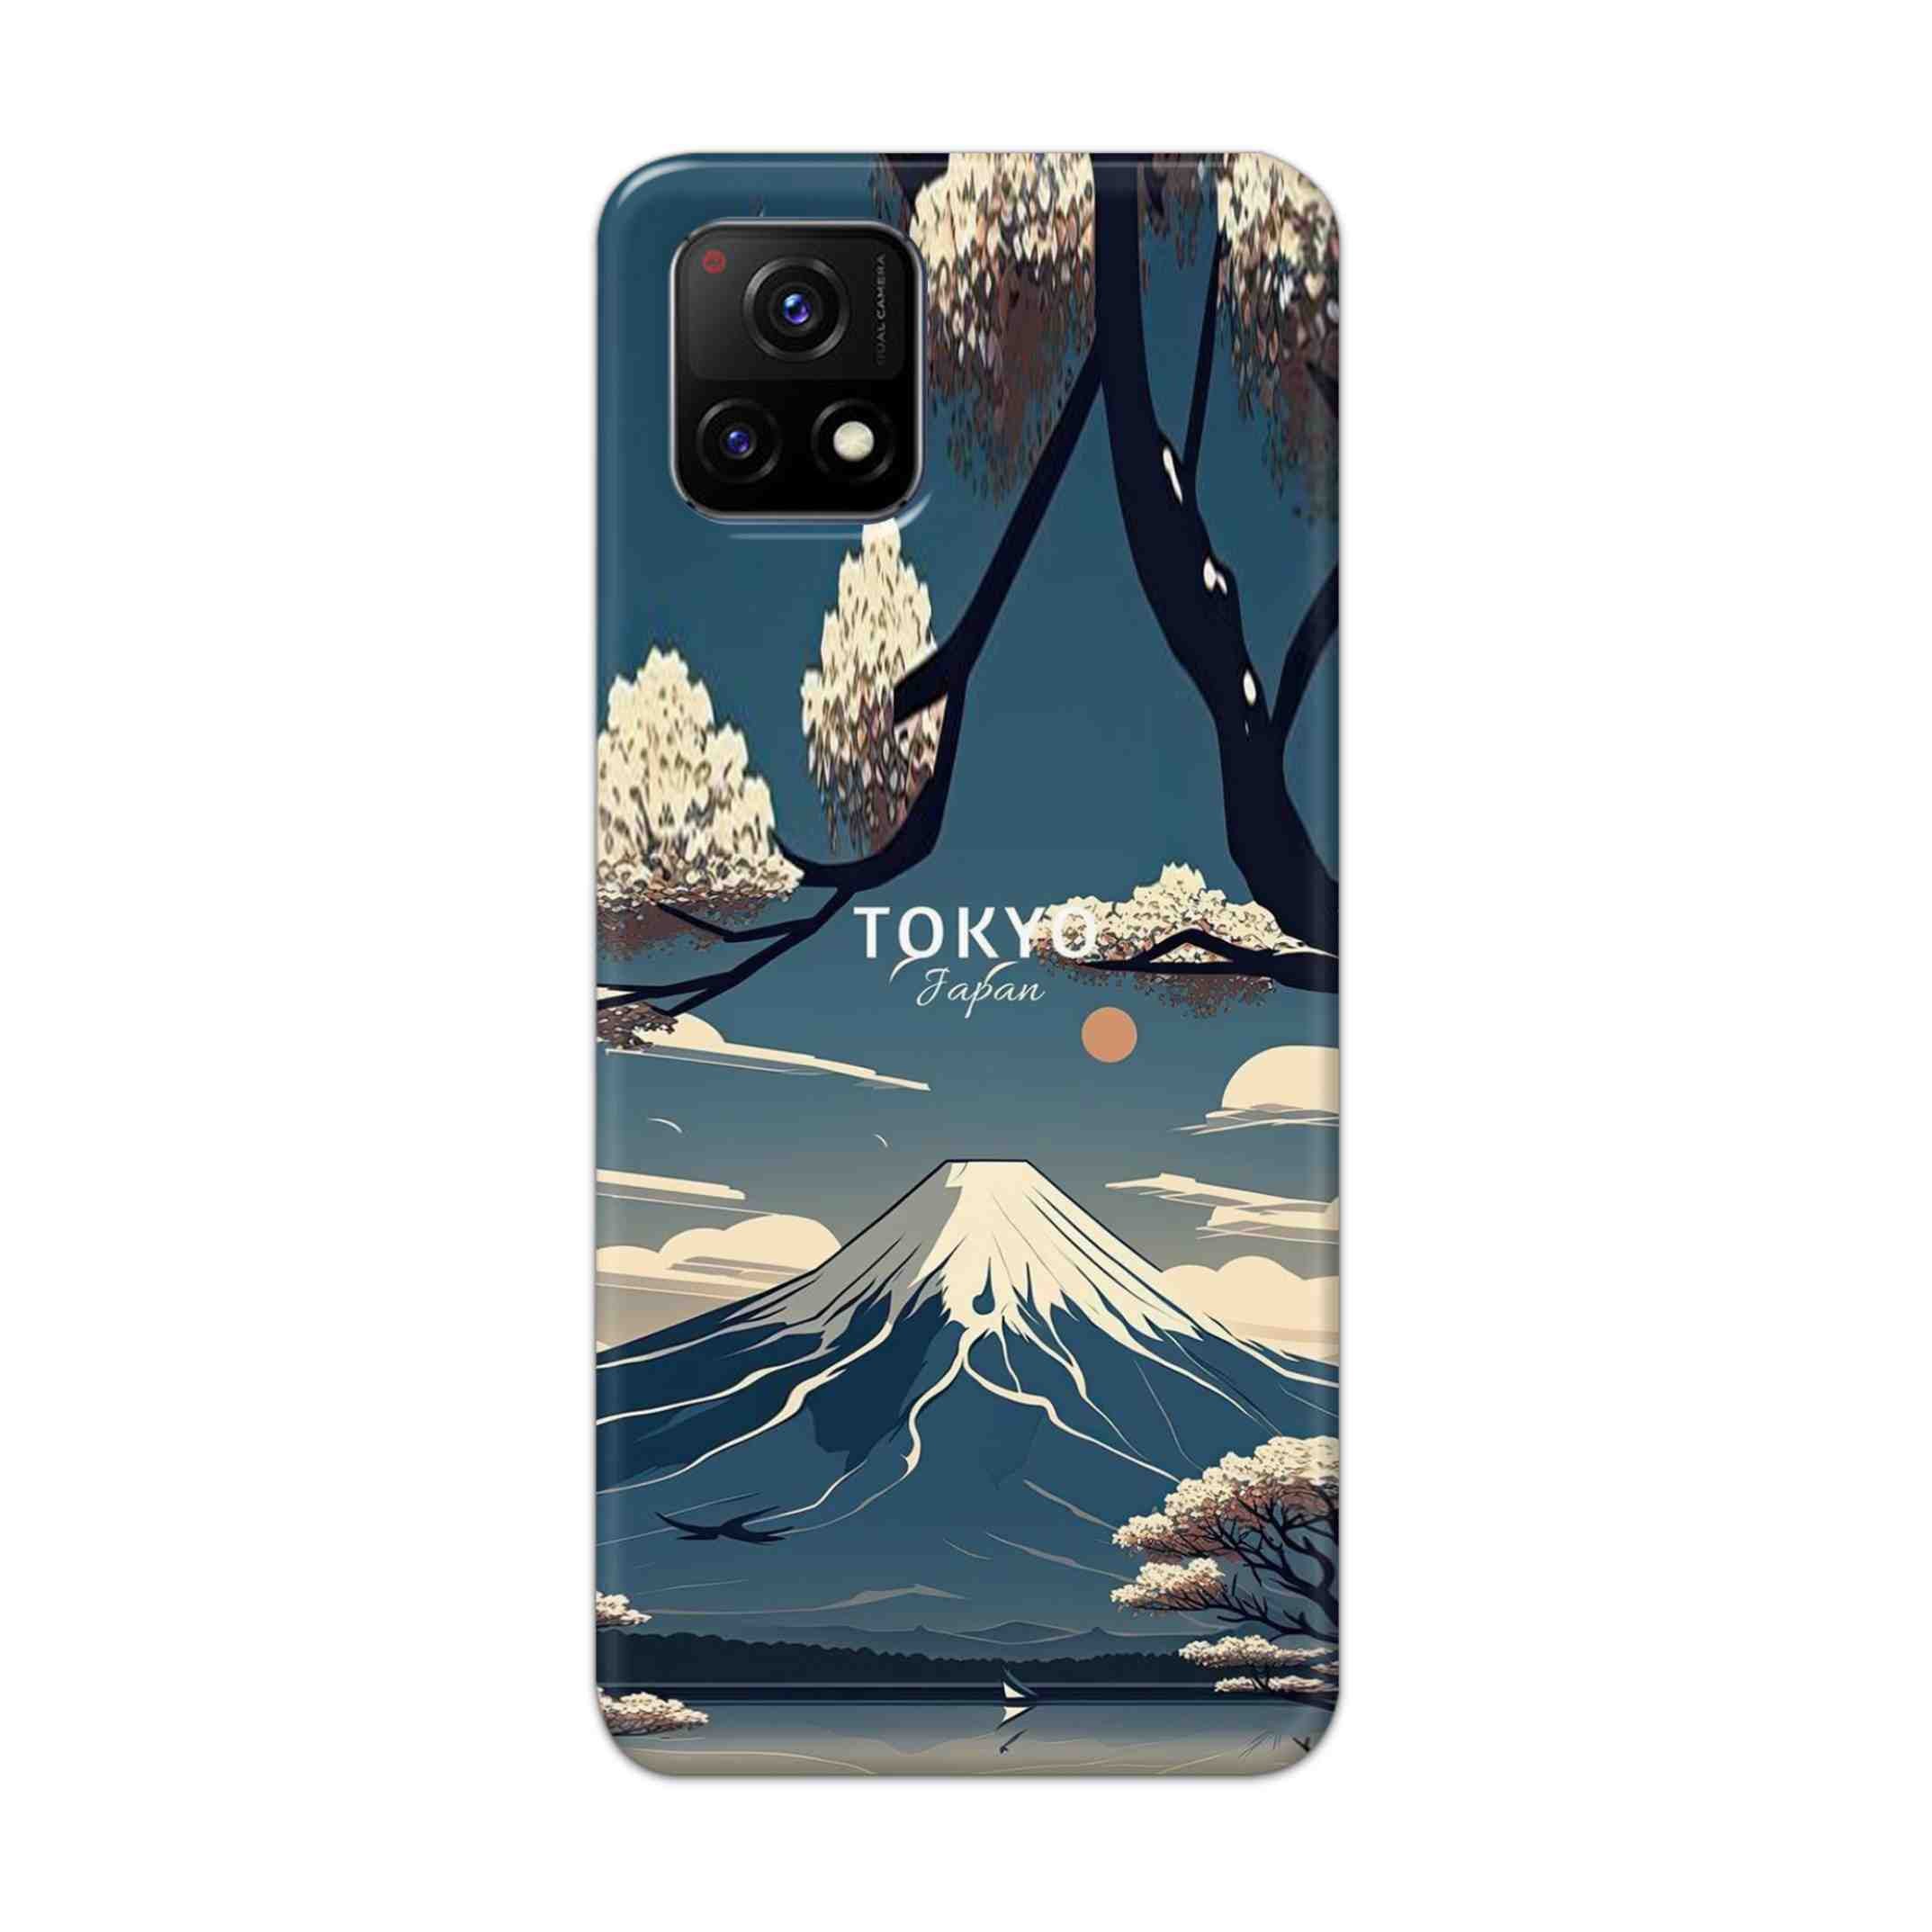 Buy Tokyo Hard Back Mobile Phone Case Cover For Vivo Y72 5G Online